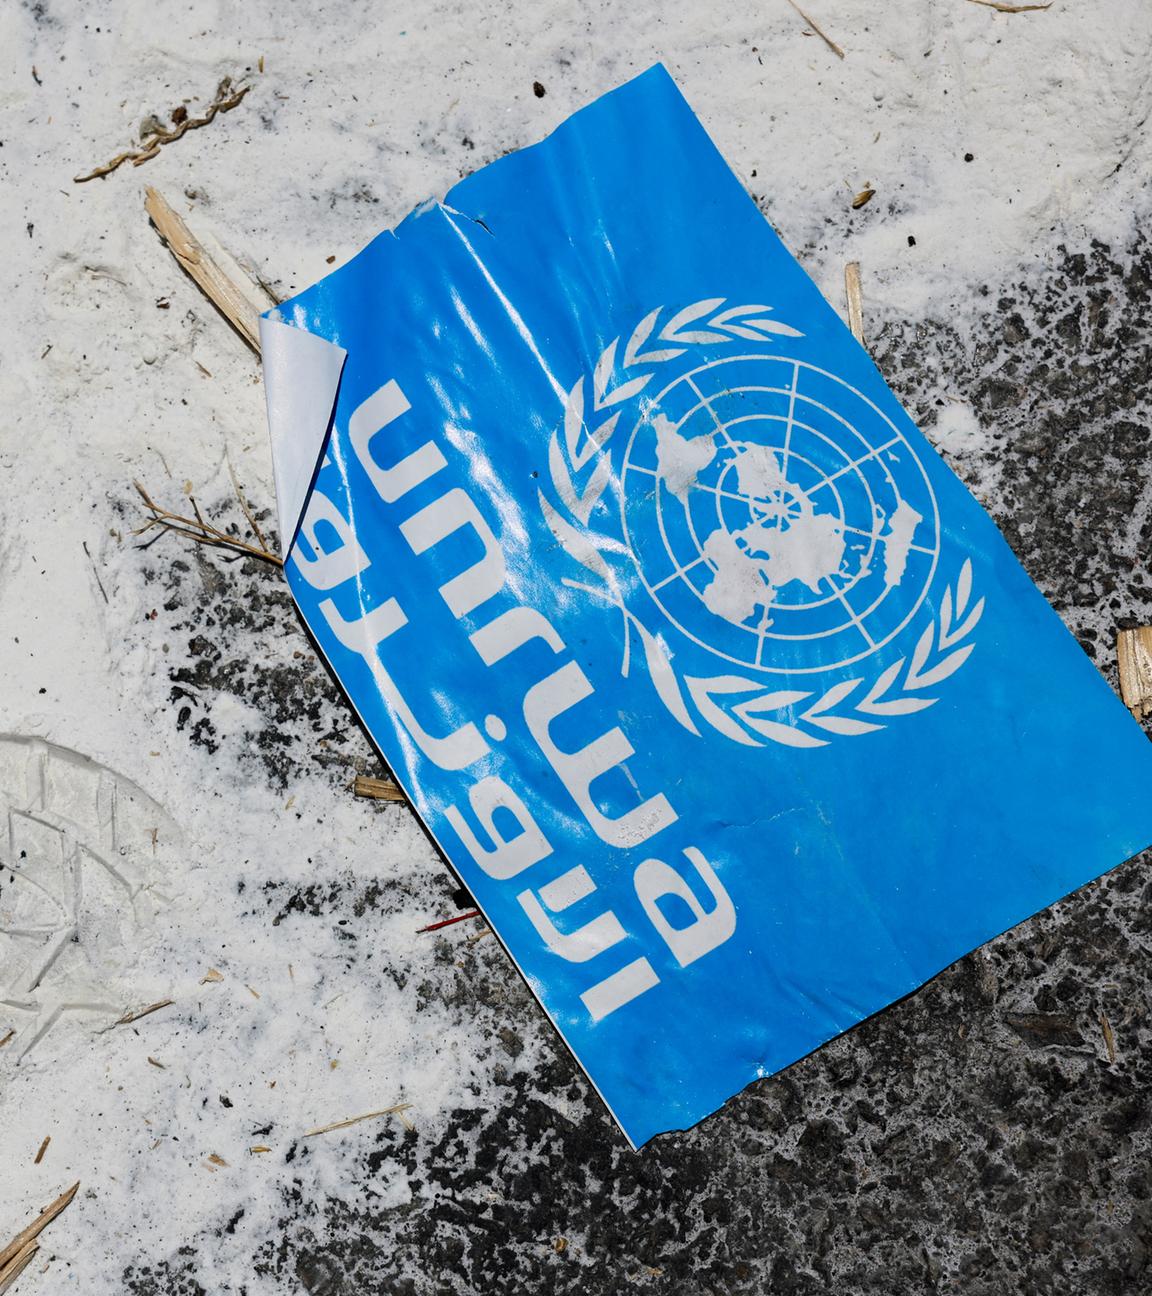 Schild des UN-Hilfswerks UNRWA